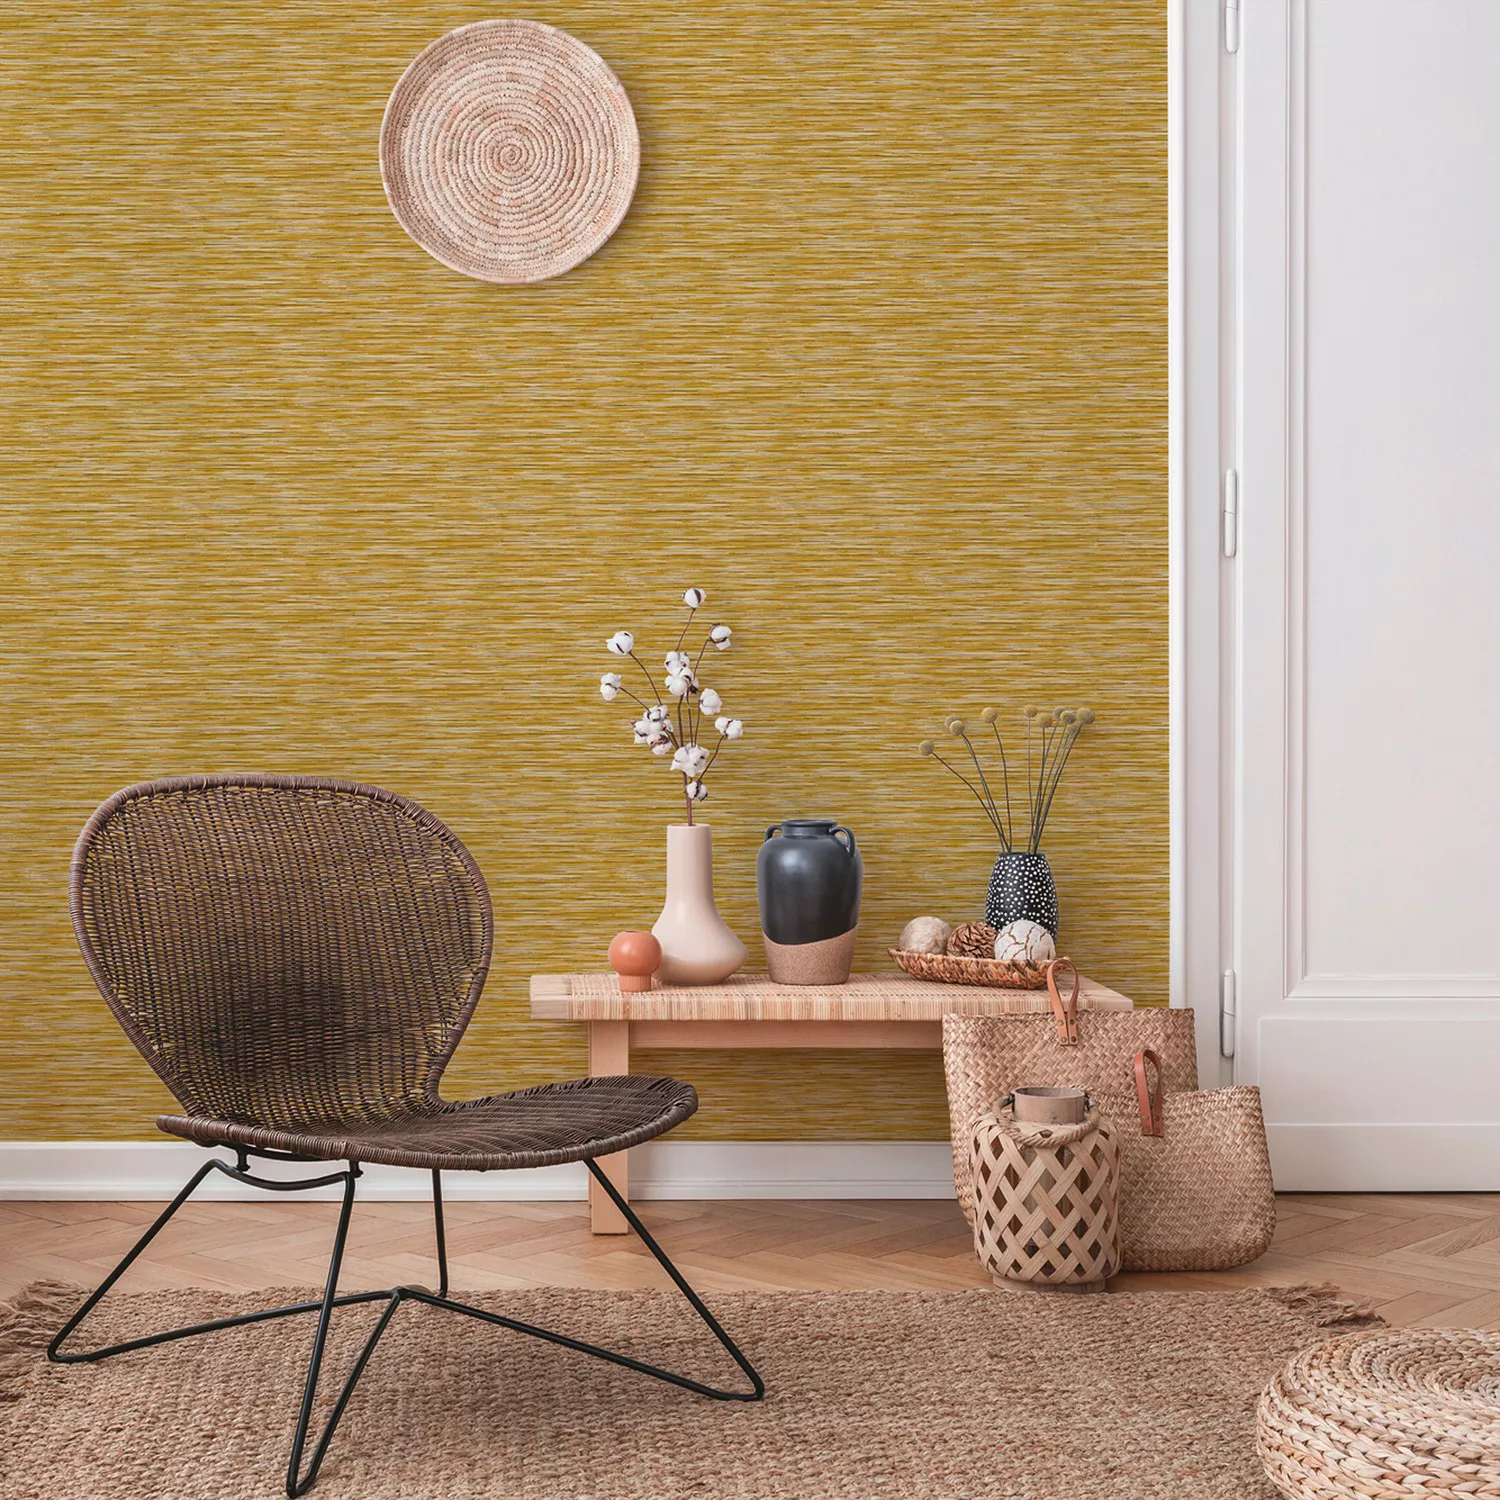 Bricoflor Graue Tapete für Büro und Wohnzimmer Moderne Vliestapete mit Viny günstig online kaufen